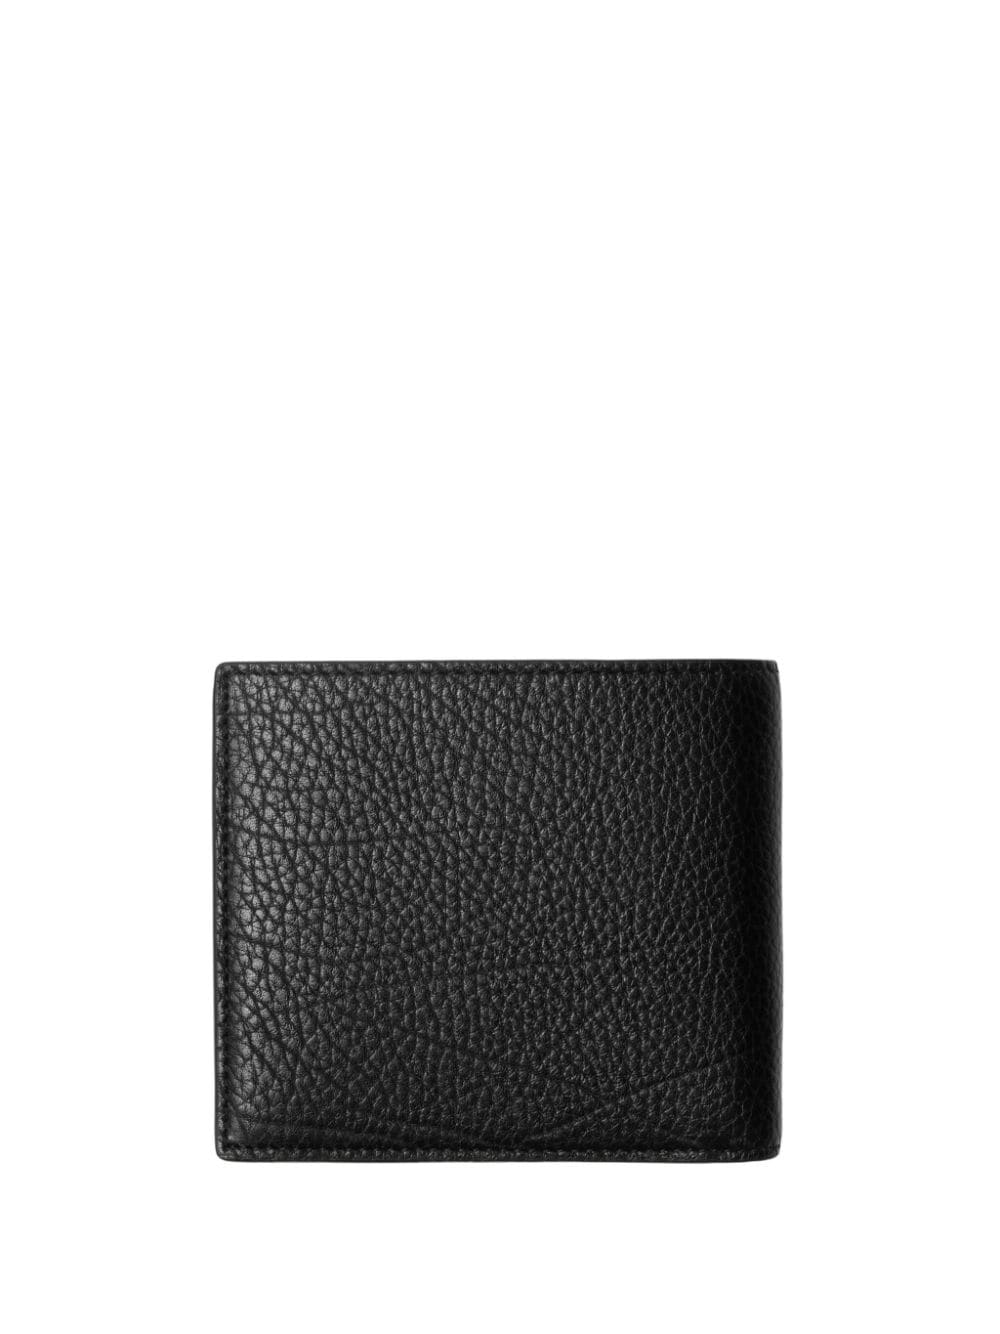 Burberry B-cut leather wallet - Zwart